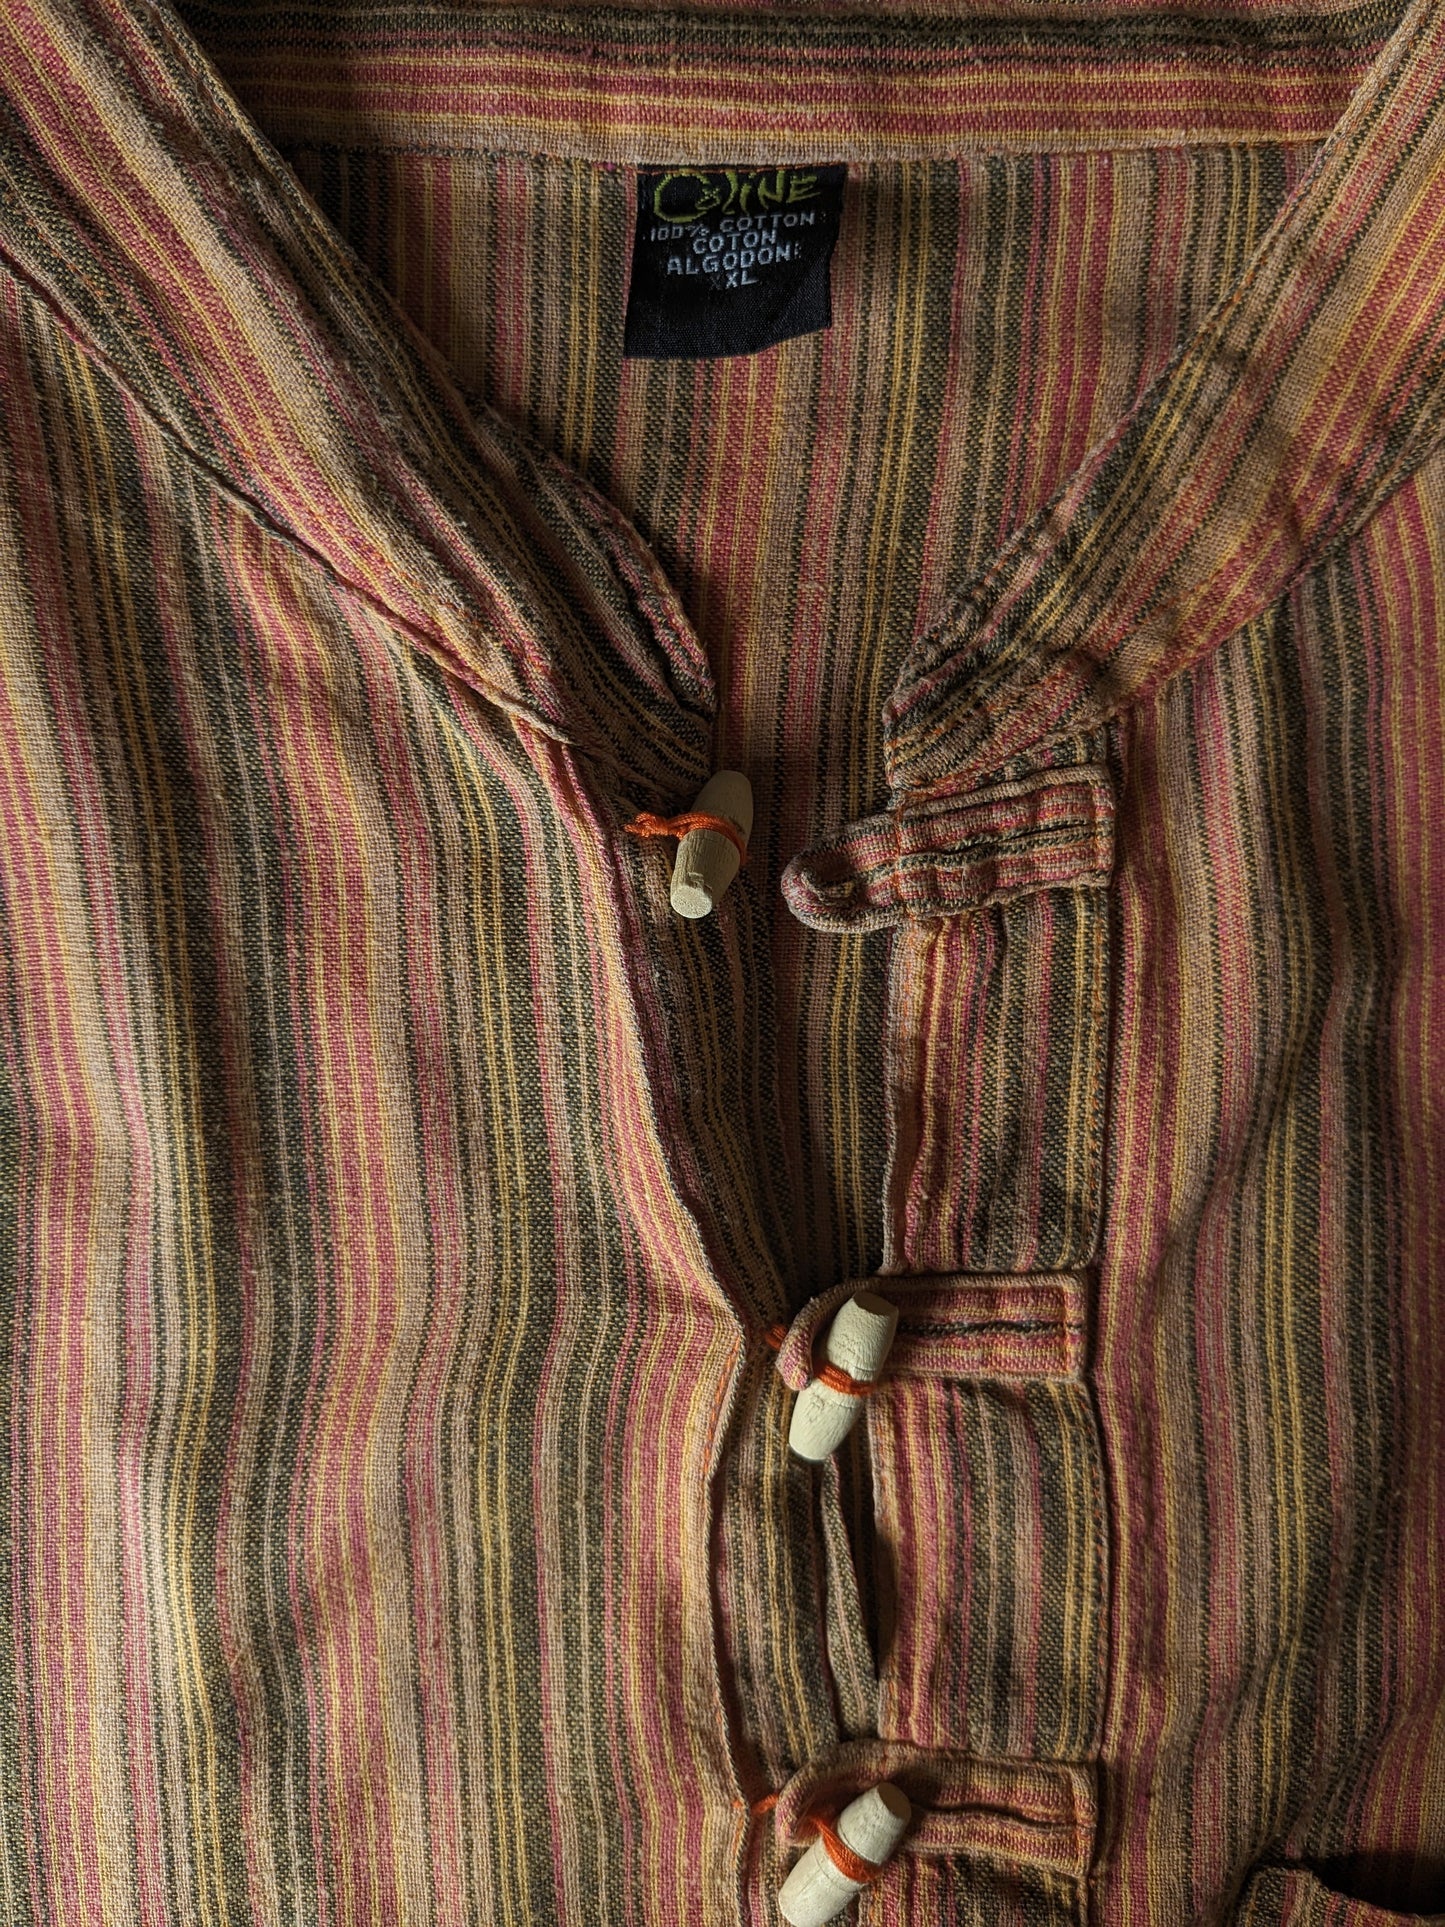 Chemise de chemise Coline vintage avec mao / agriculteur / col debout. Orange rouge jaune noir rayé. Taille xl.